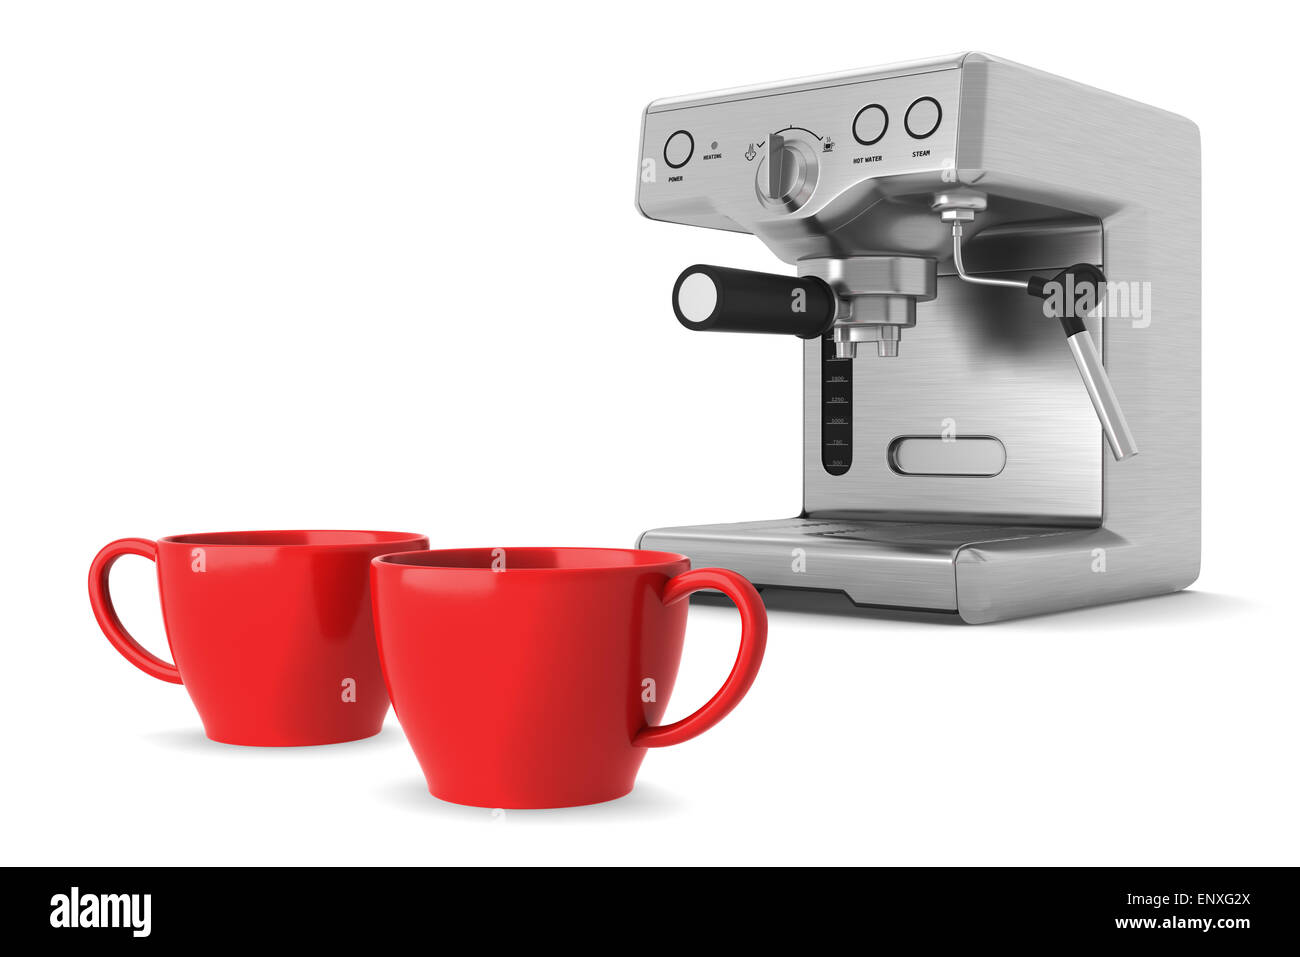 Deux tasses rouge et machine à café isolated on white Banque D'Images